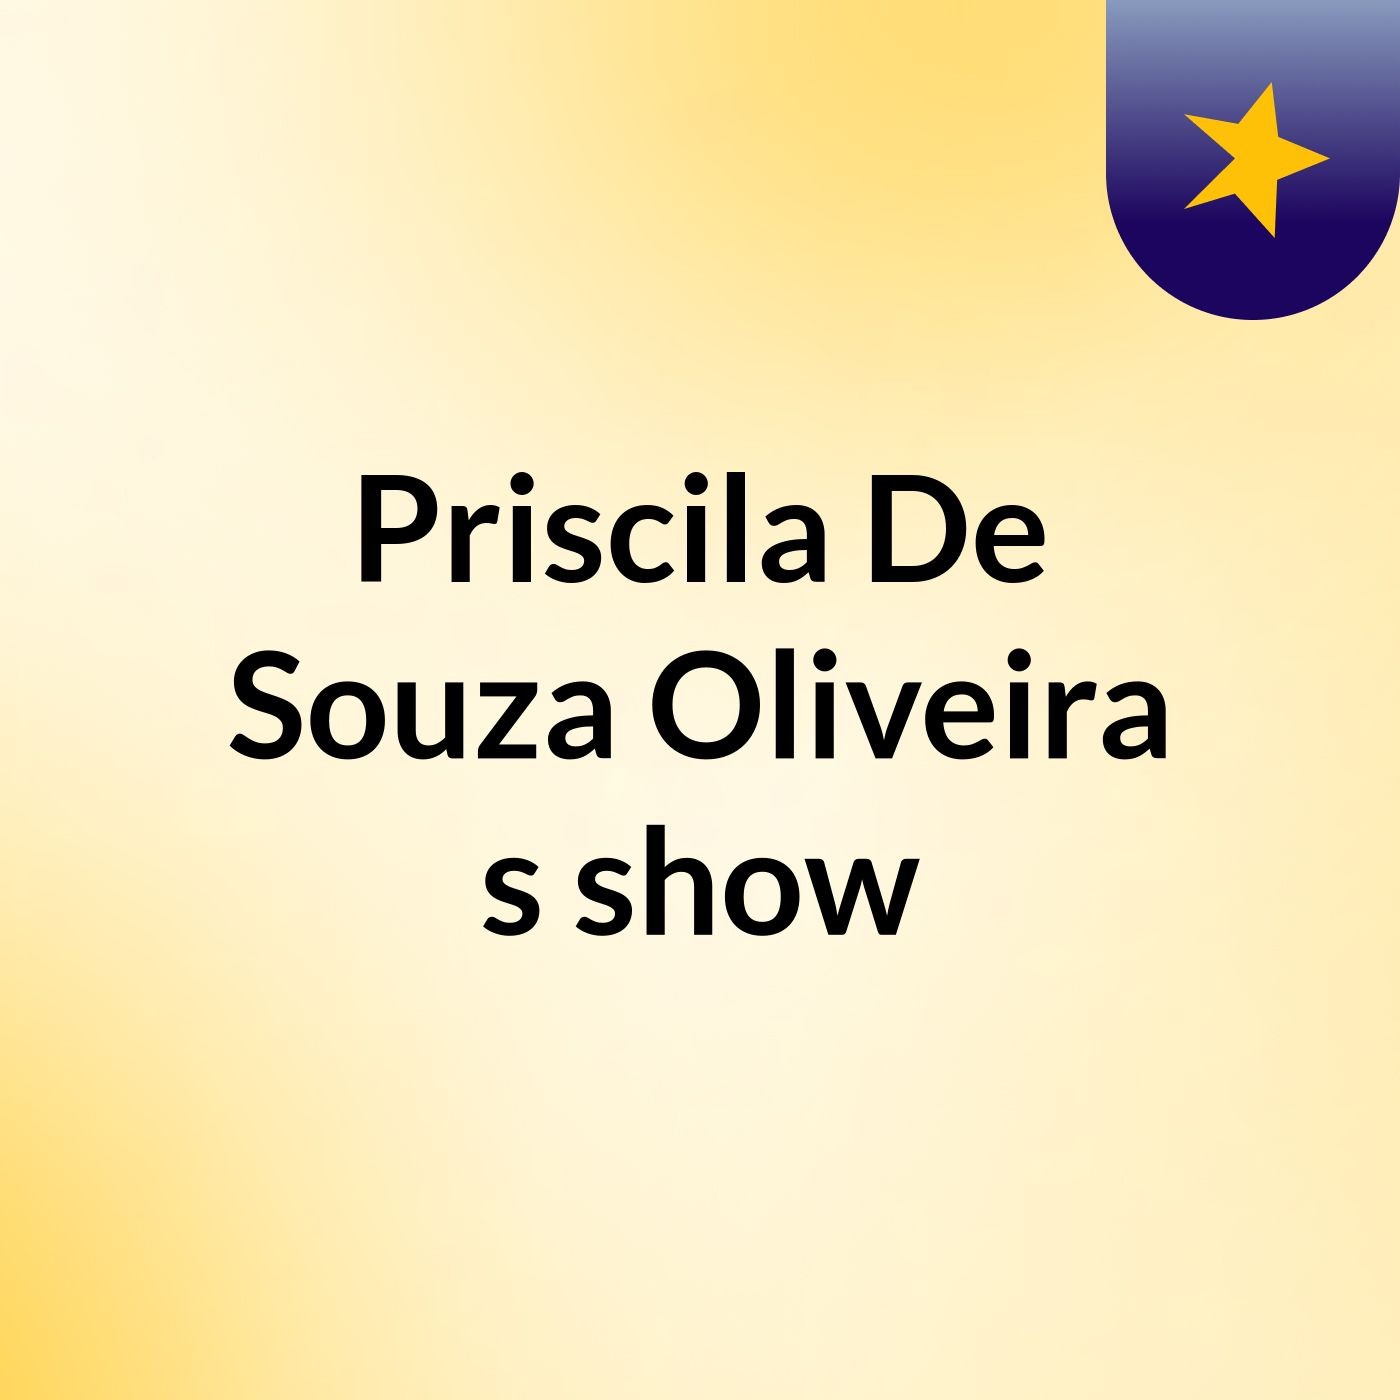 Priscila De Souza Oliveira's show